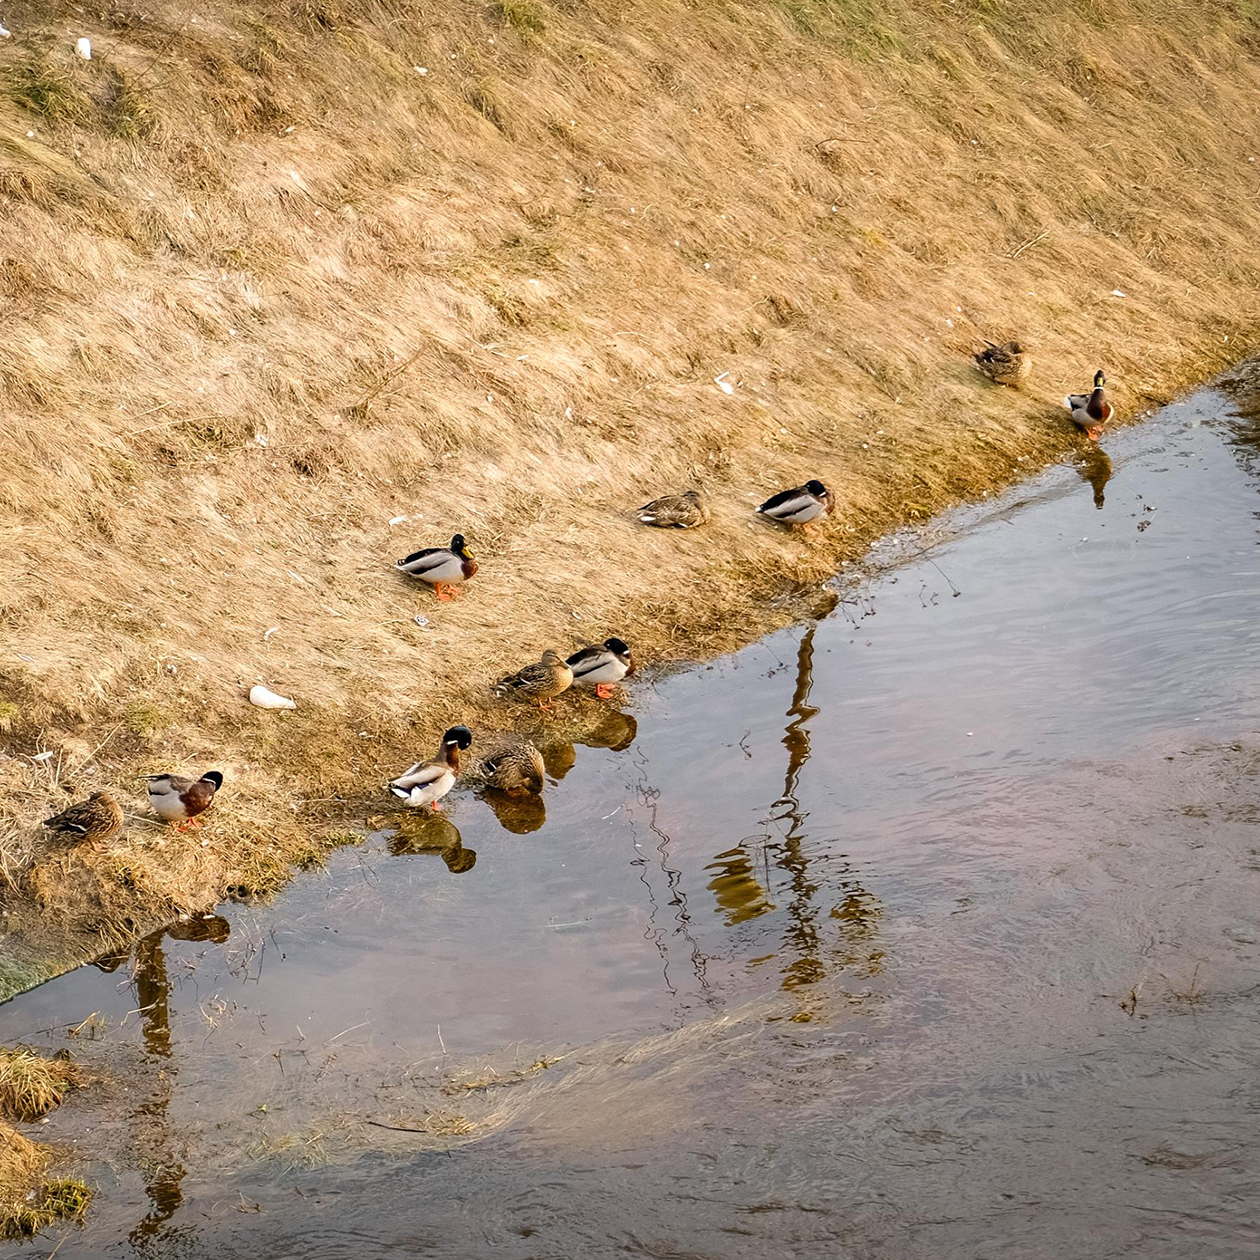 Утки организовались в забавную диагональную линию вдоль берега. Видимо, им пока не хочется мокнуть, поэтому тусят на суше